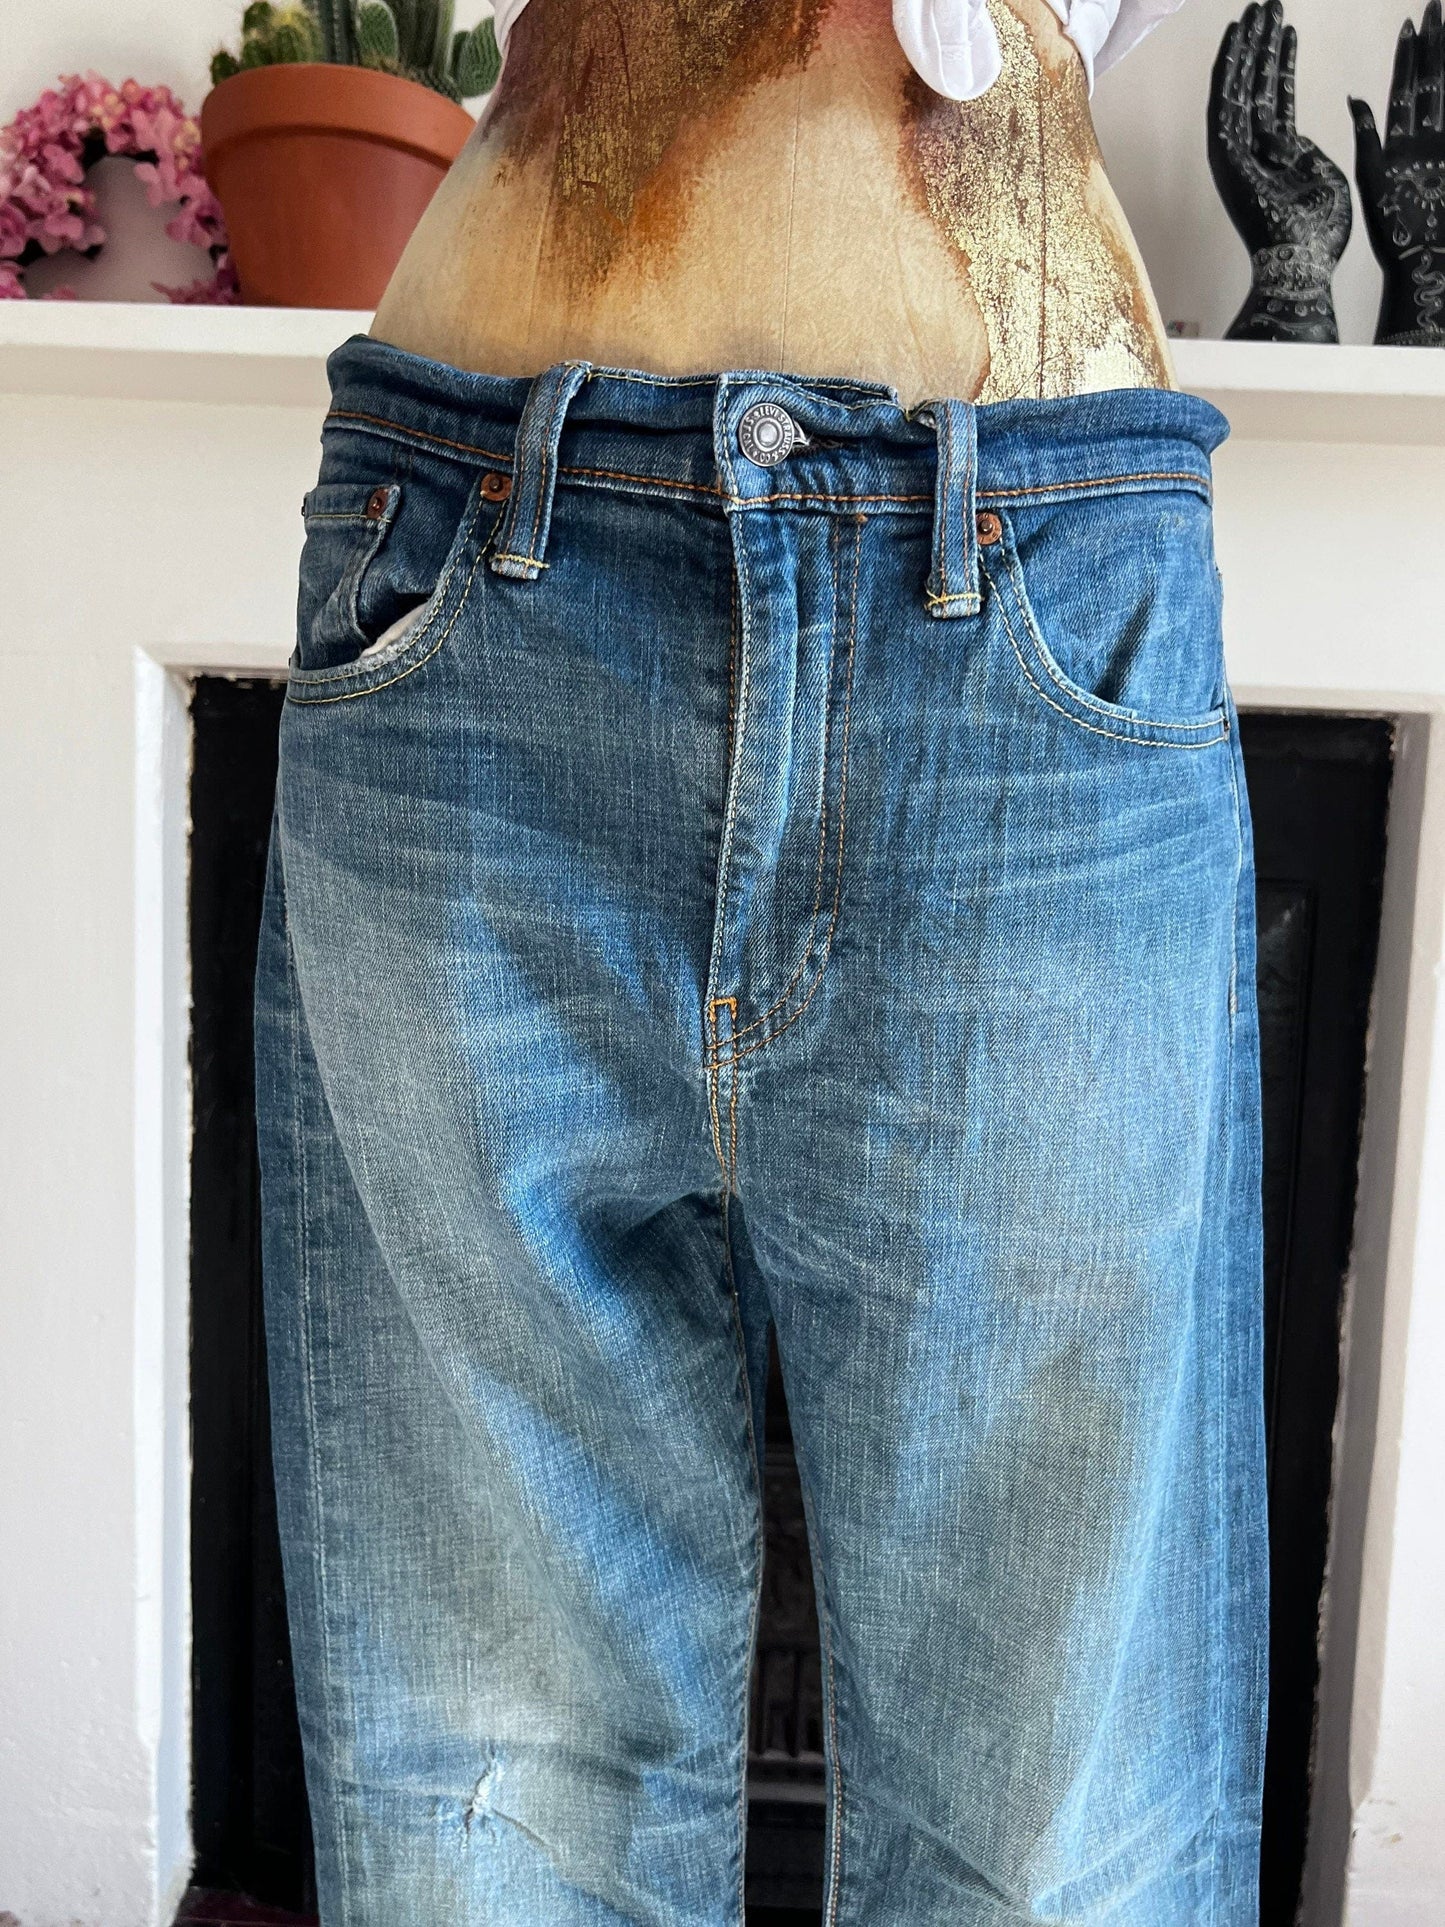 Vintage Levi Jeans Straight 522 Fit - light stone wash denim jeans  - Levi Jeans 522 W31 L30